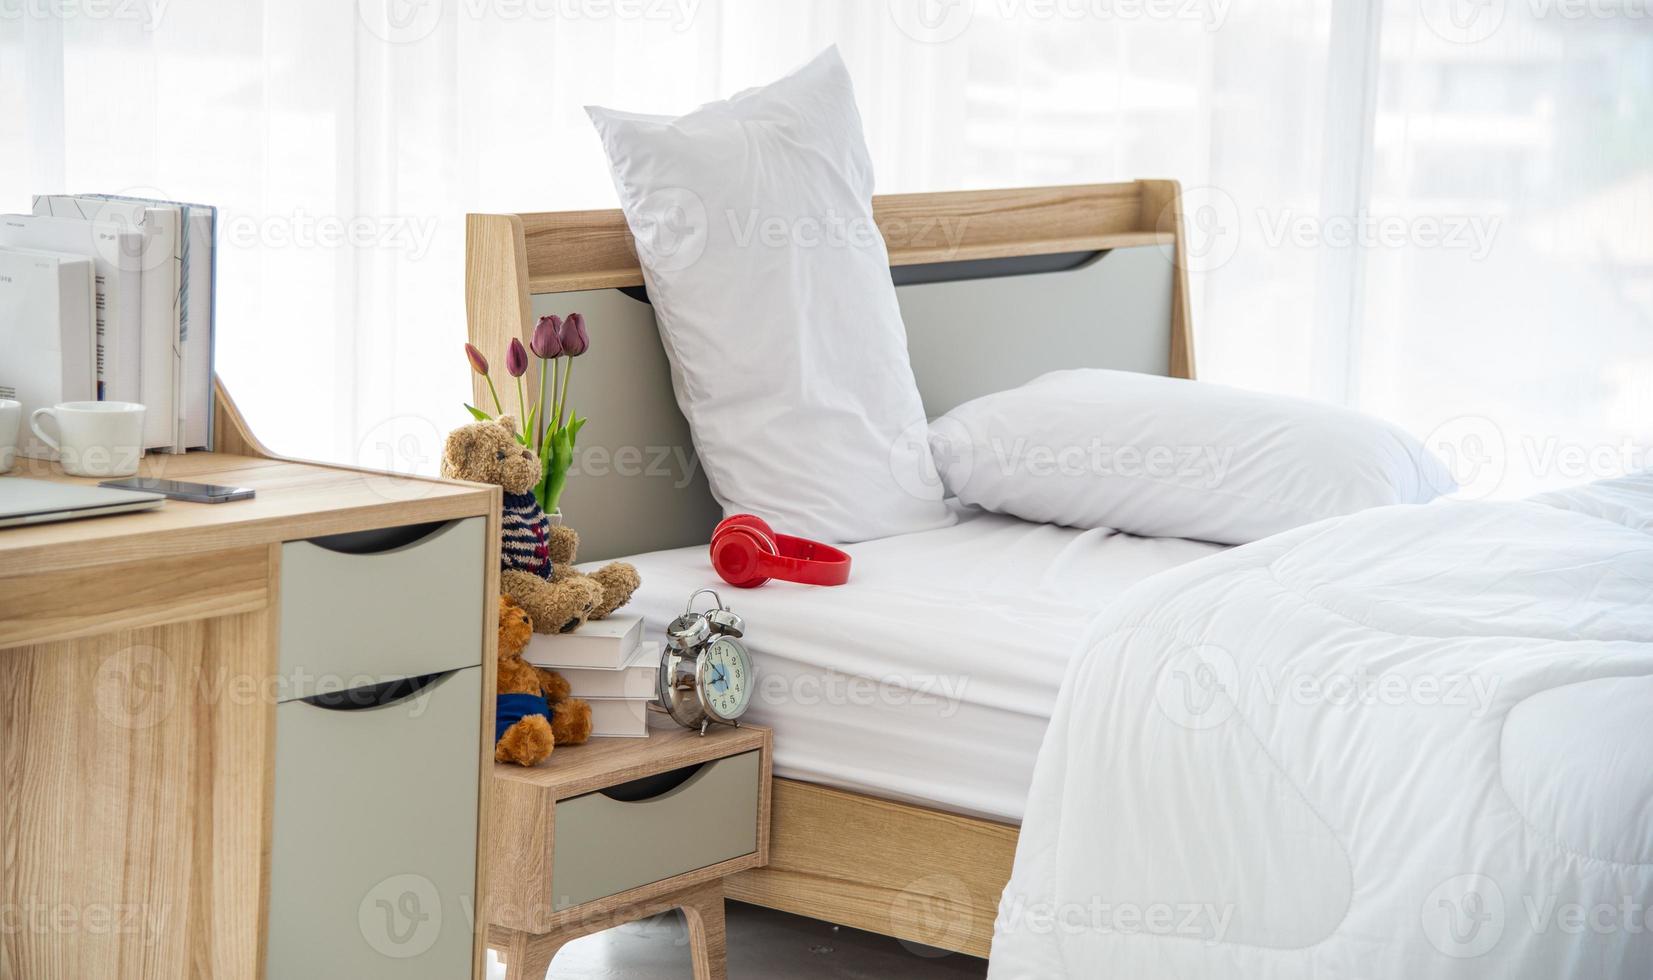 le design intérieur moderne ou minimal de la chambre décoré avec un lit double confortable, une literie blanche telle qu'une couverture, des oreillers et des meubles en bois photo